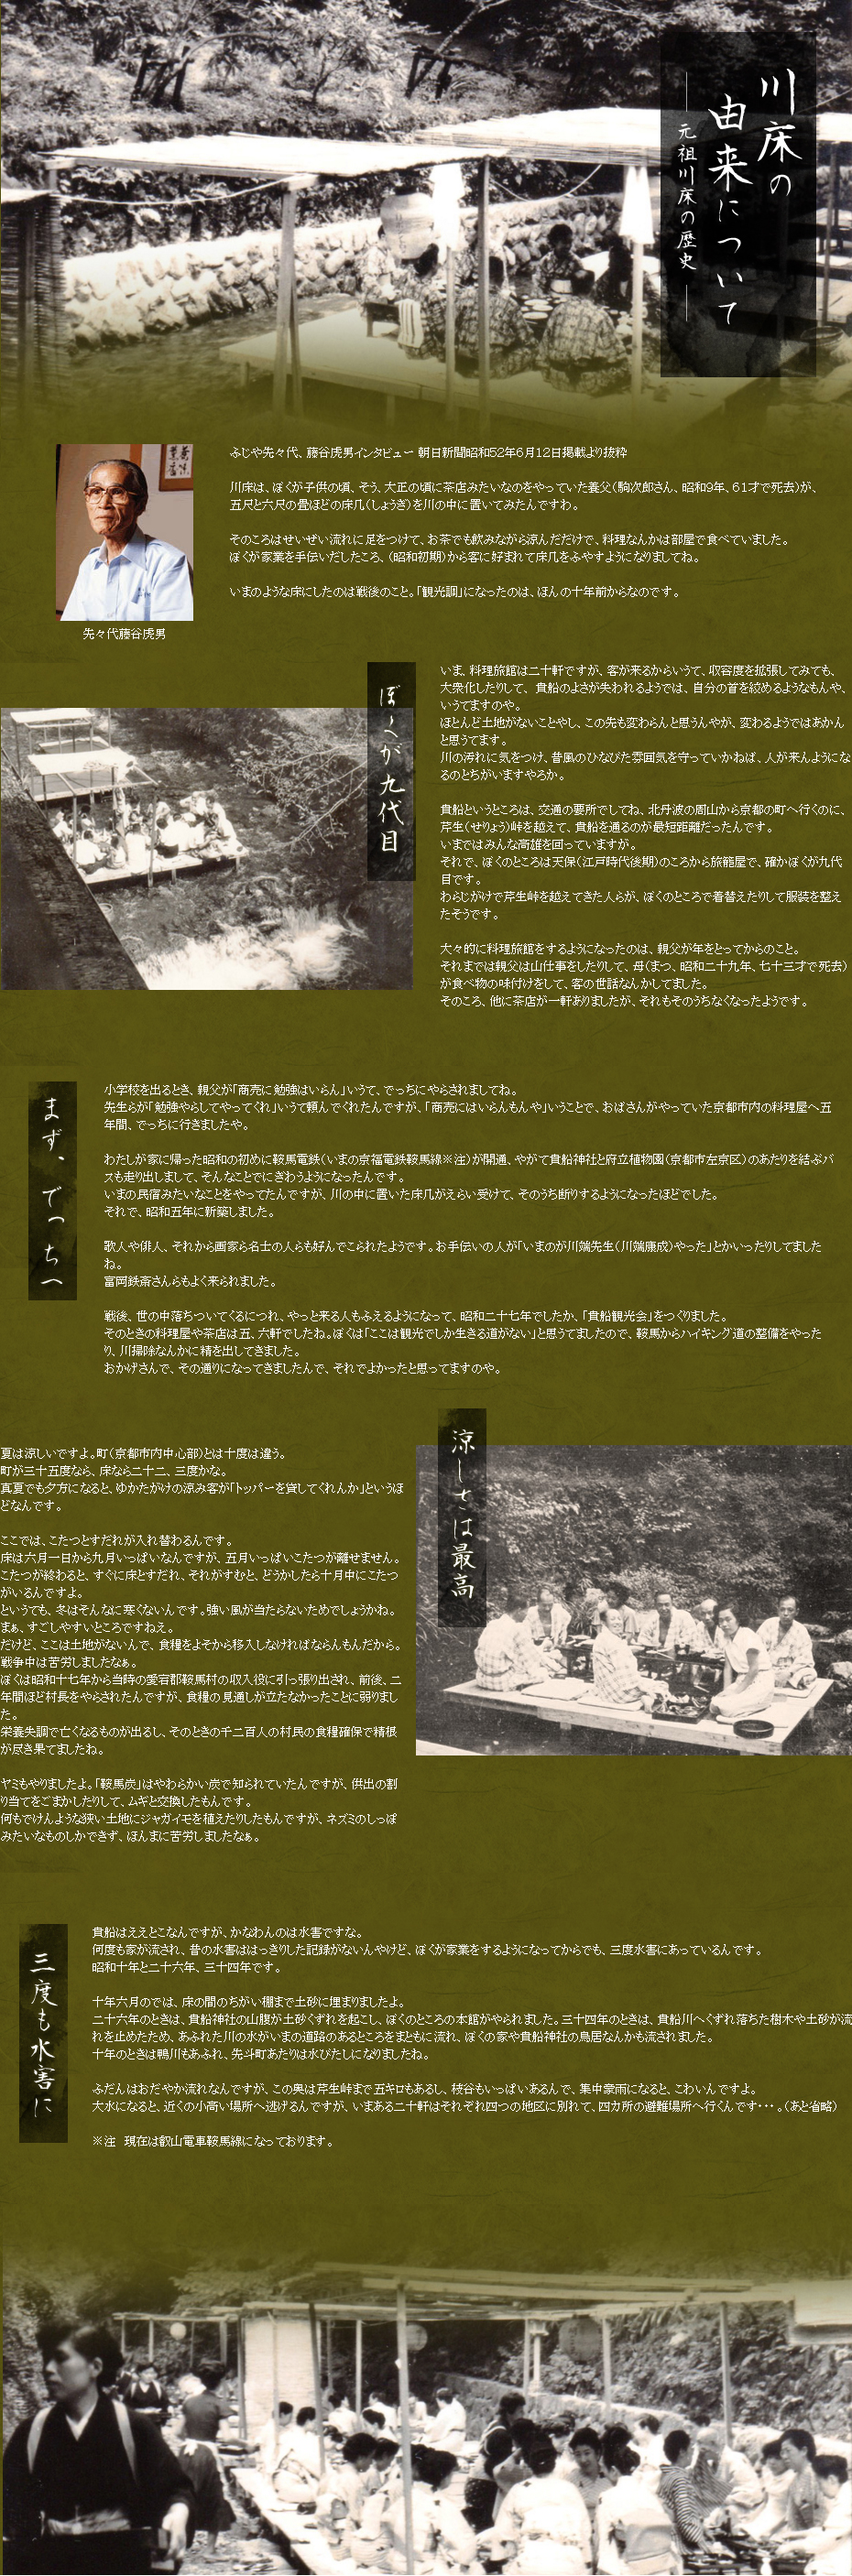 元祖川床の歴史